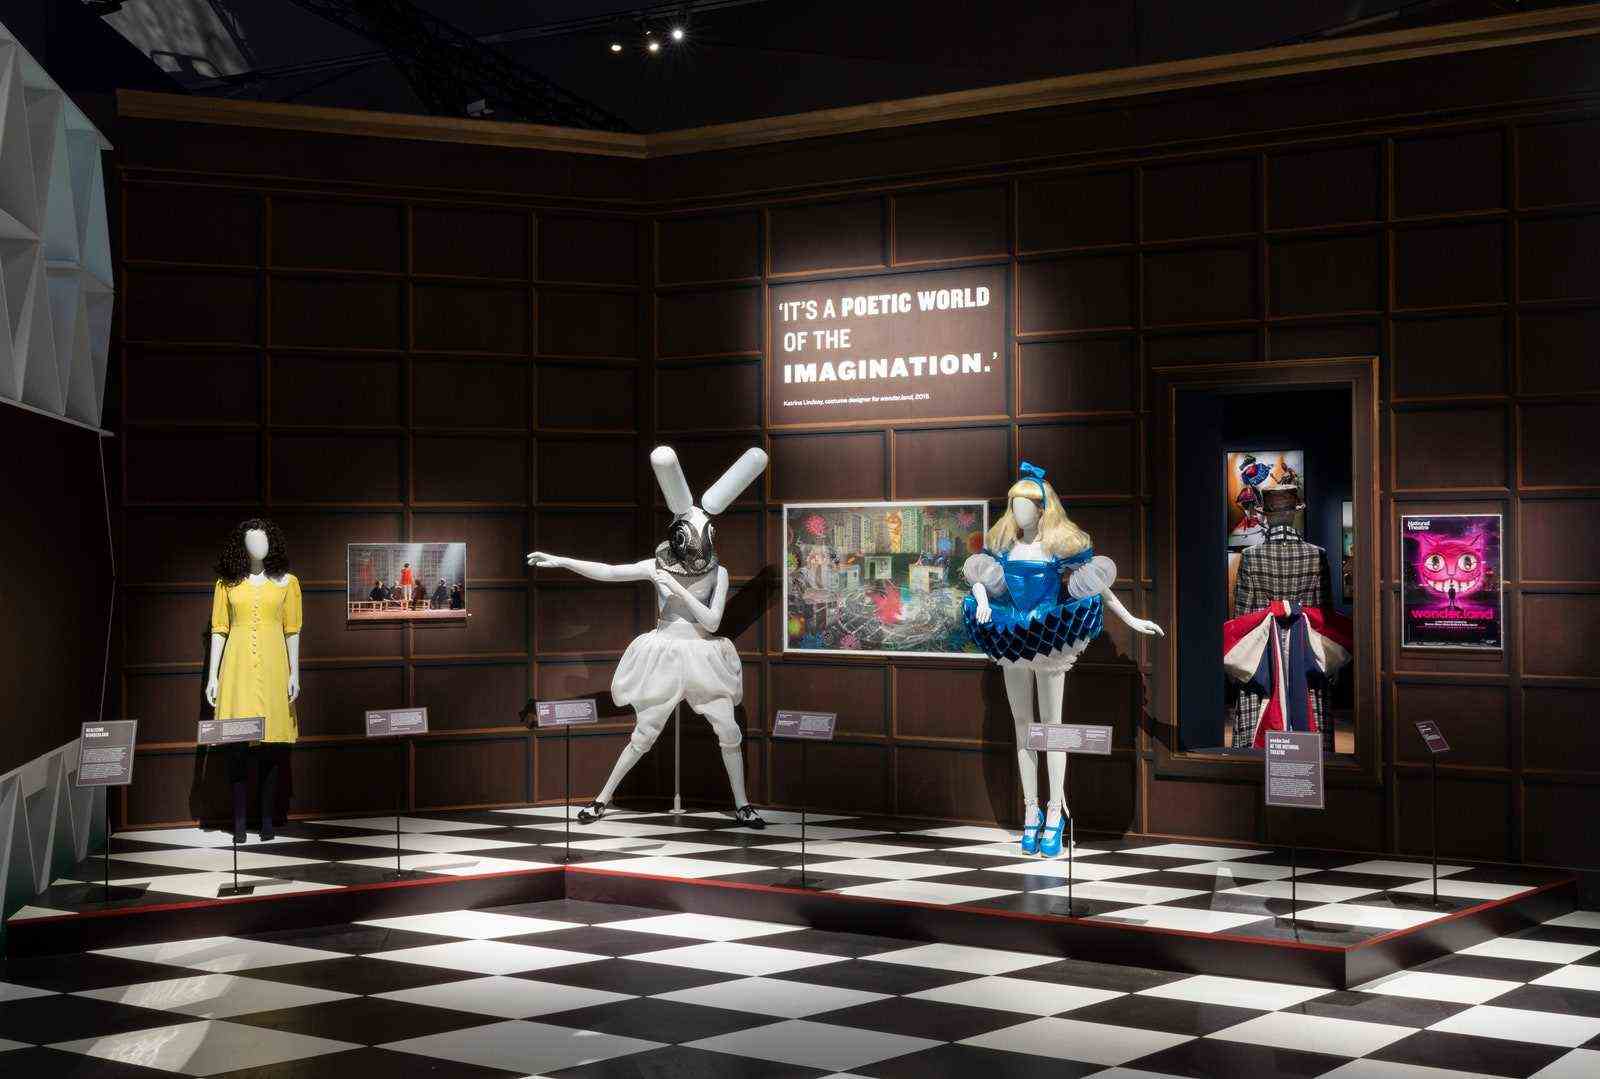 Blick auf die Installation mit mehreren Schaufensterpuppen in Kostümen zum Thema Alice im Wunderland